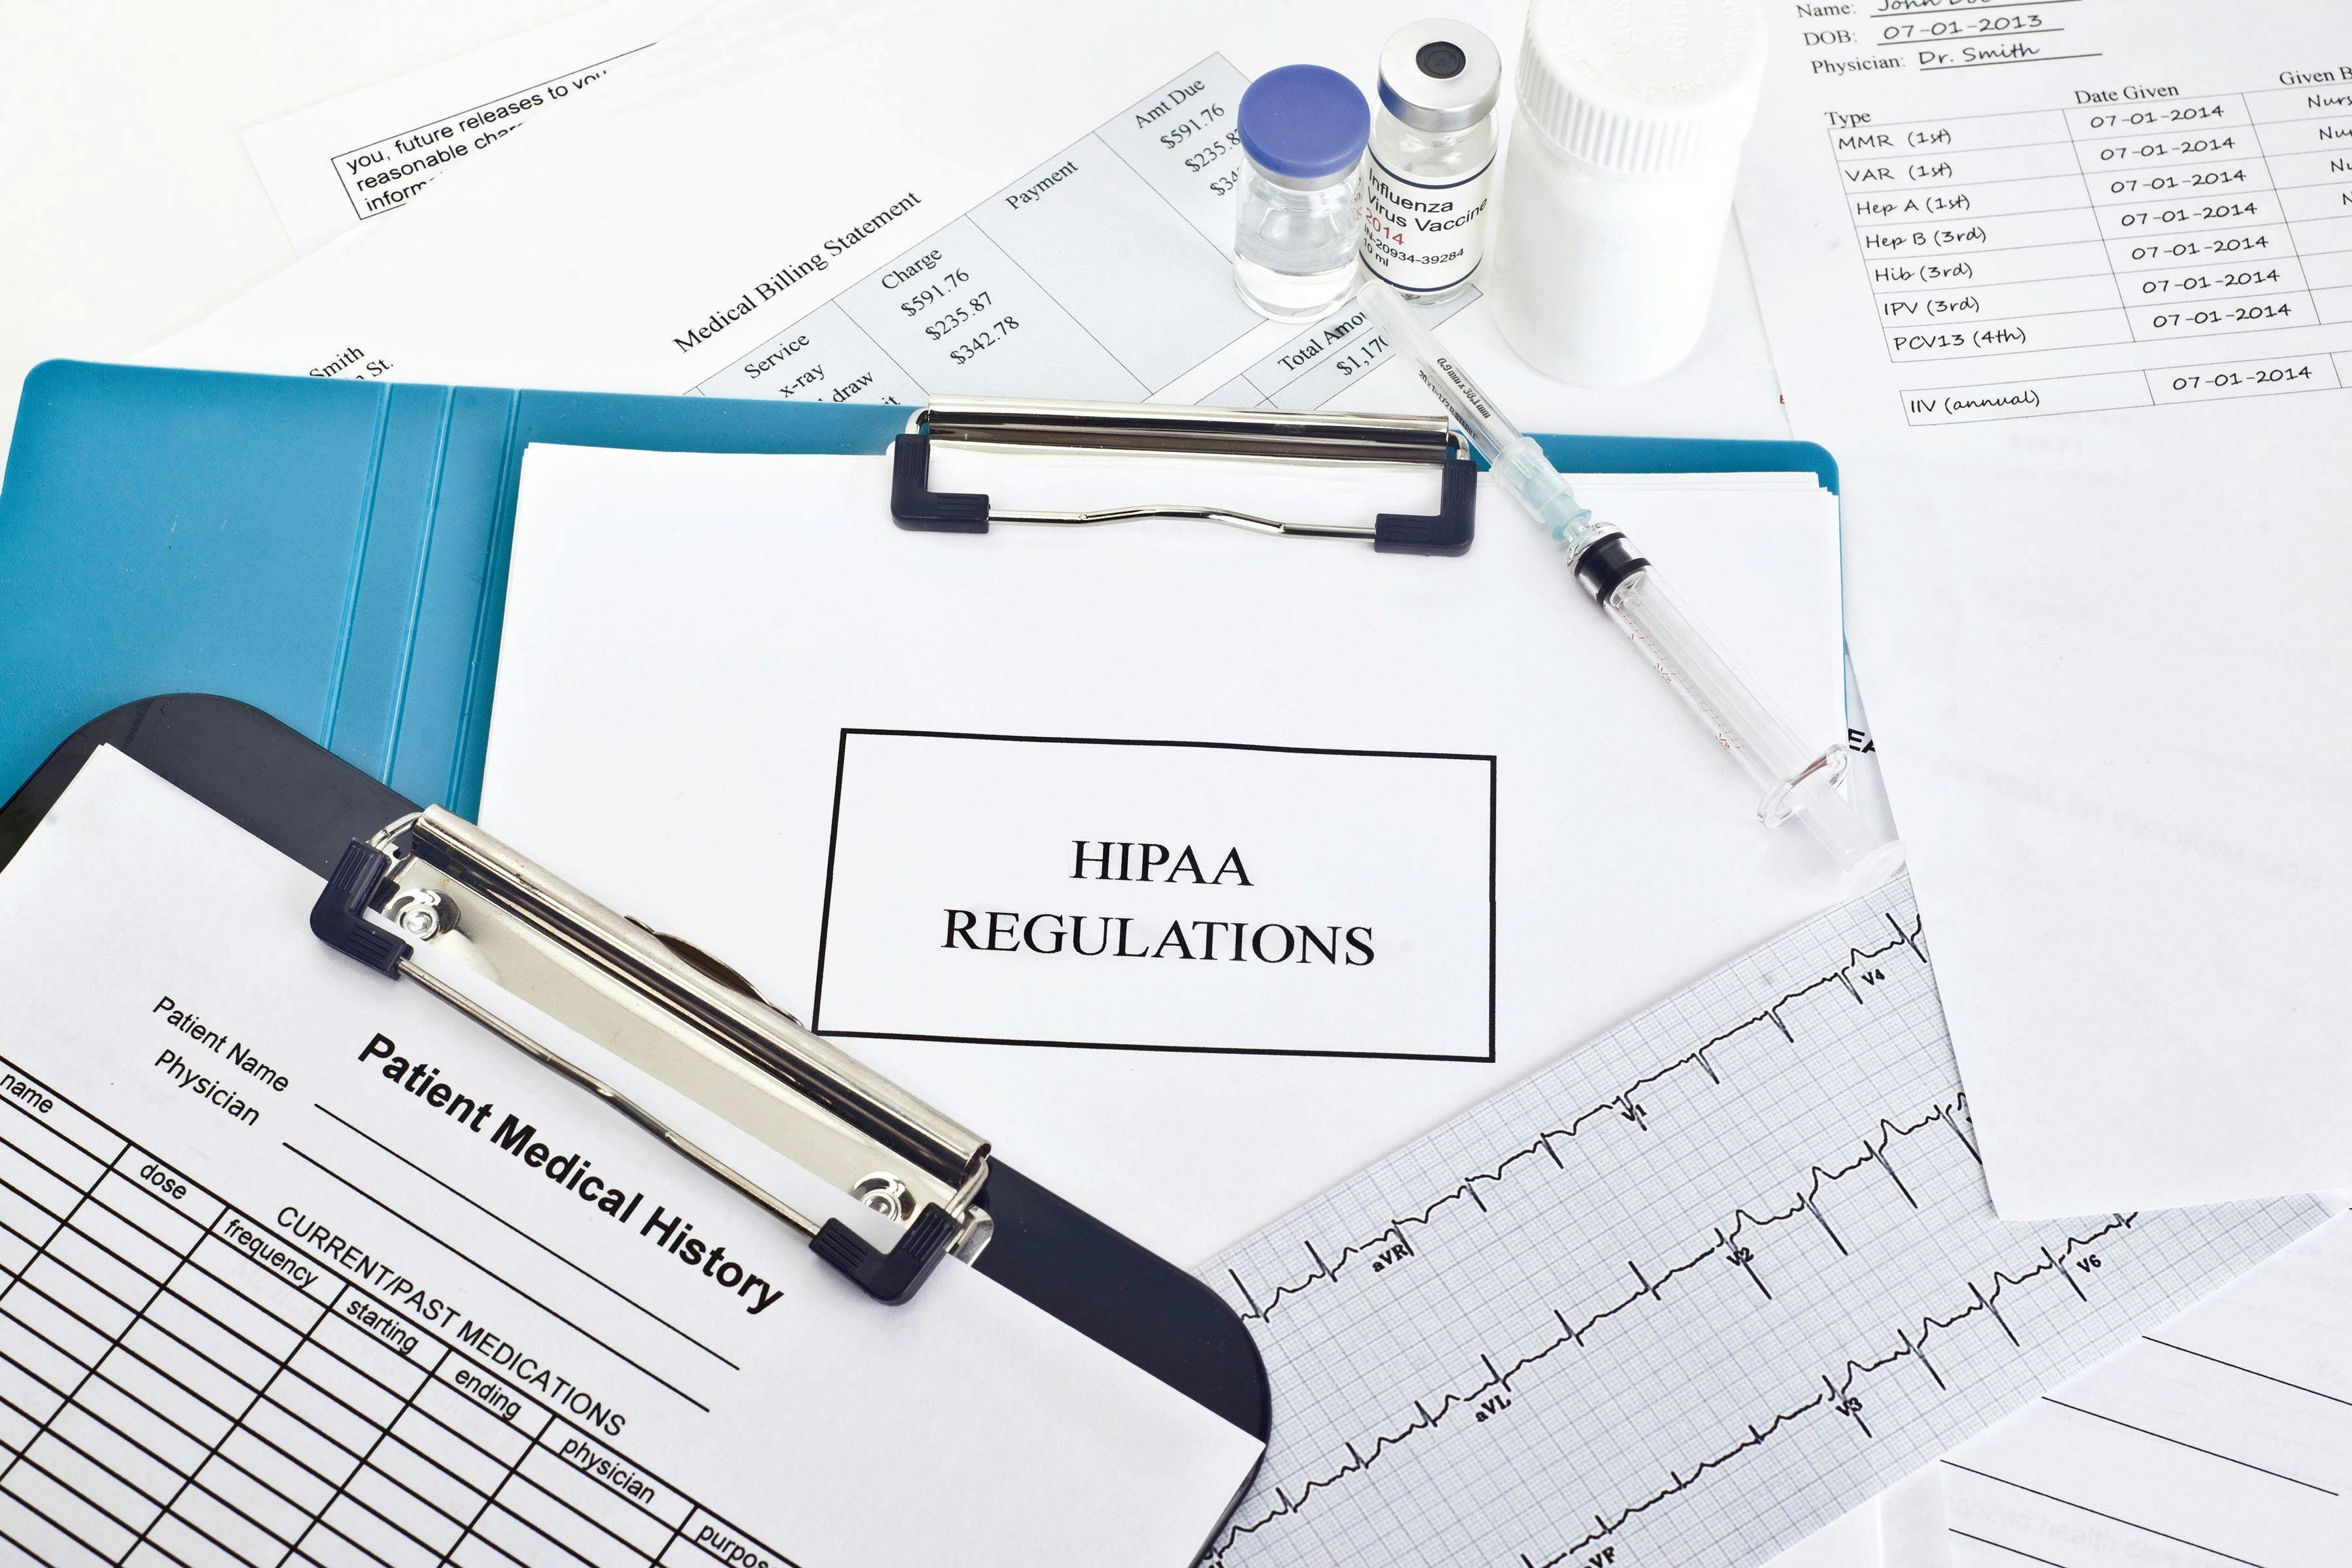 An Expert's View of HIPAA